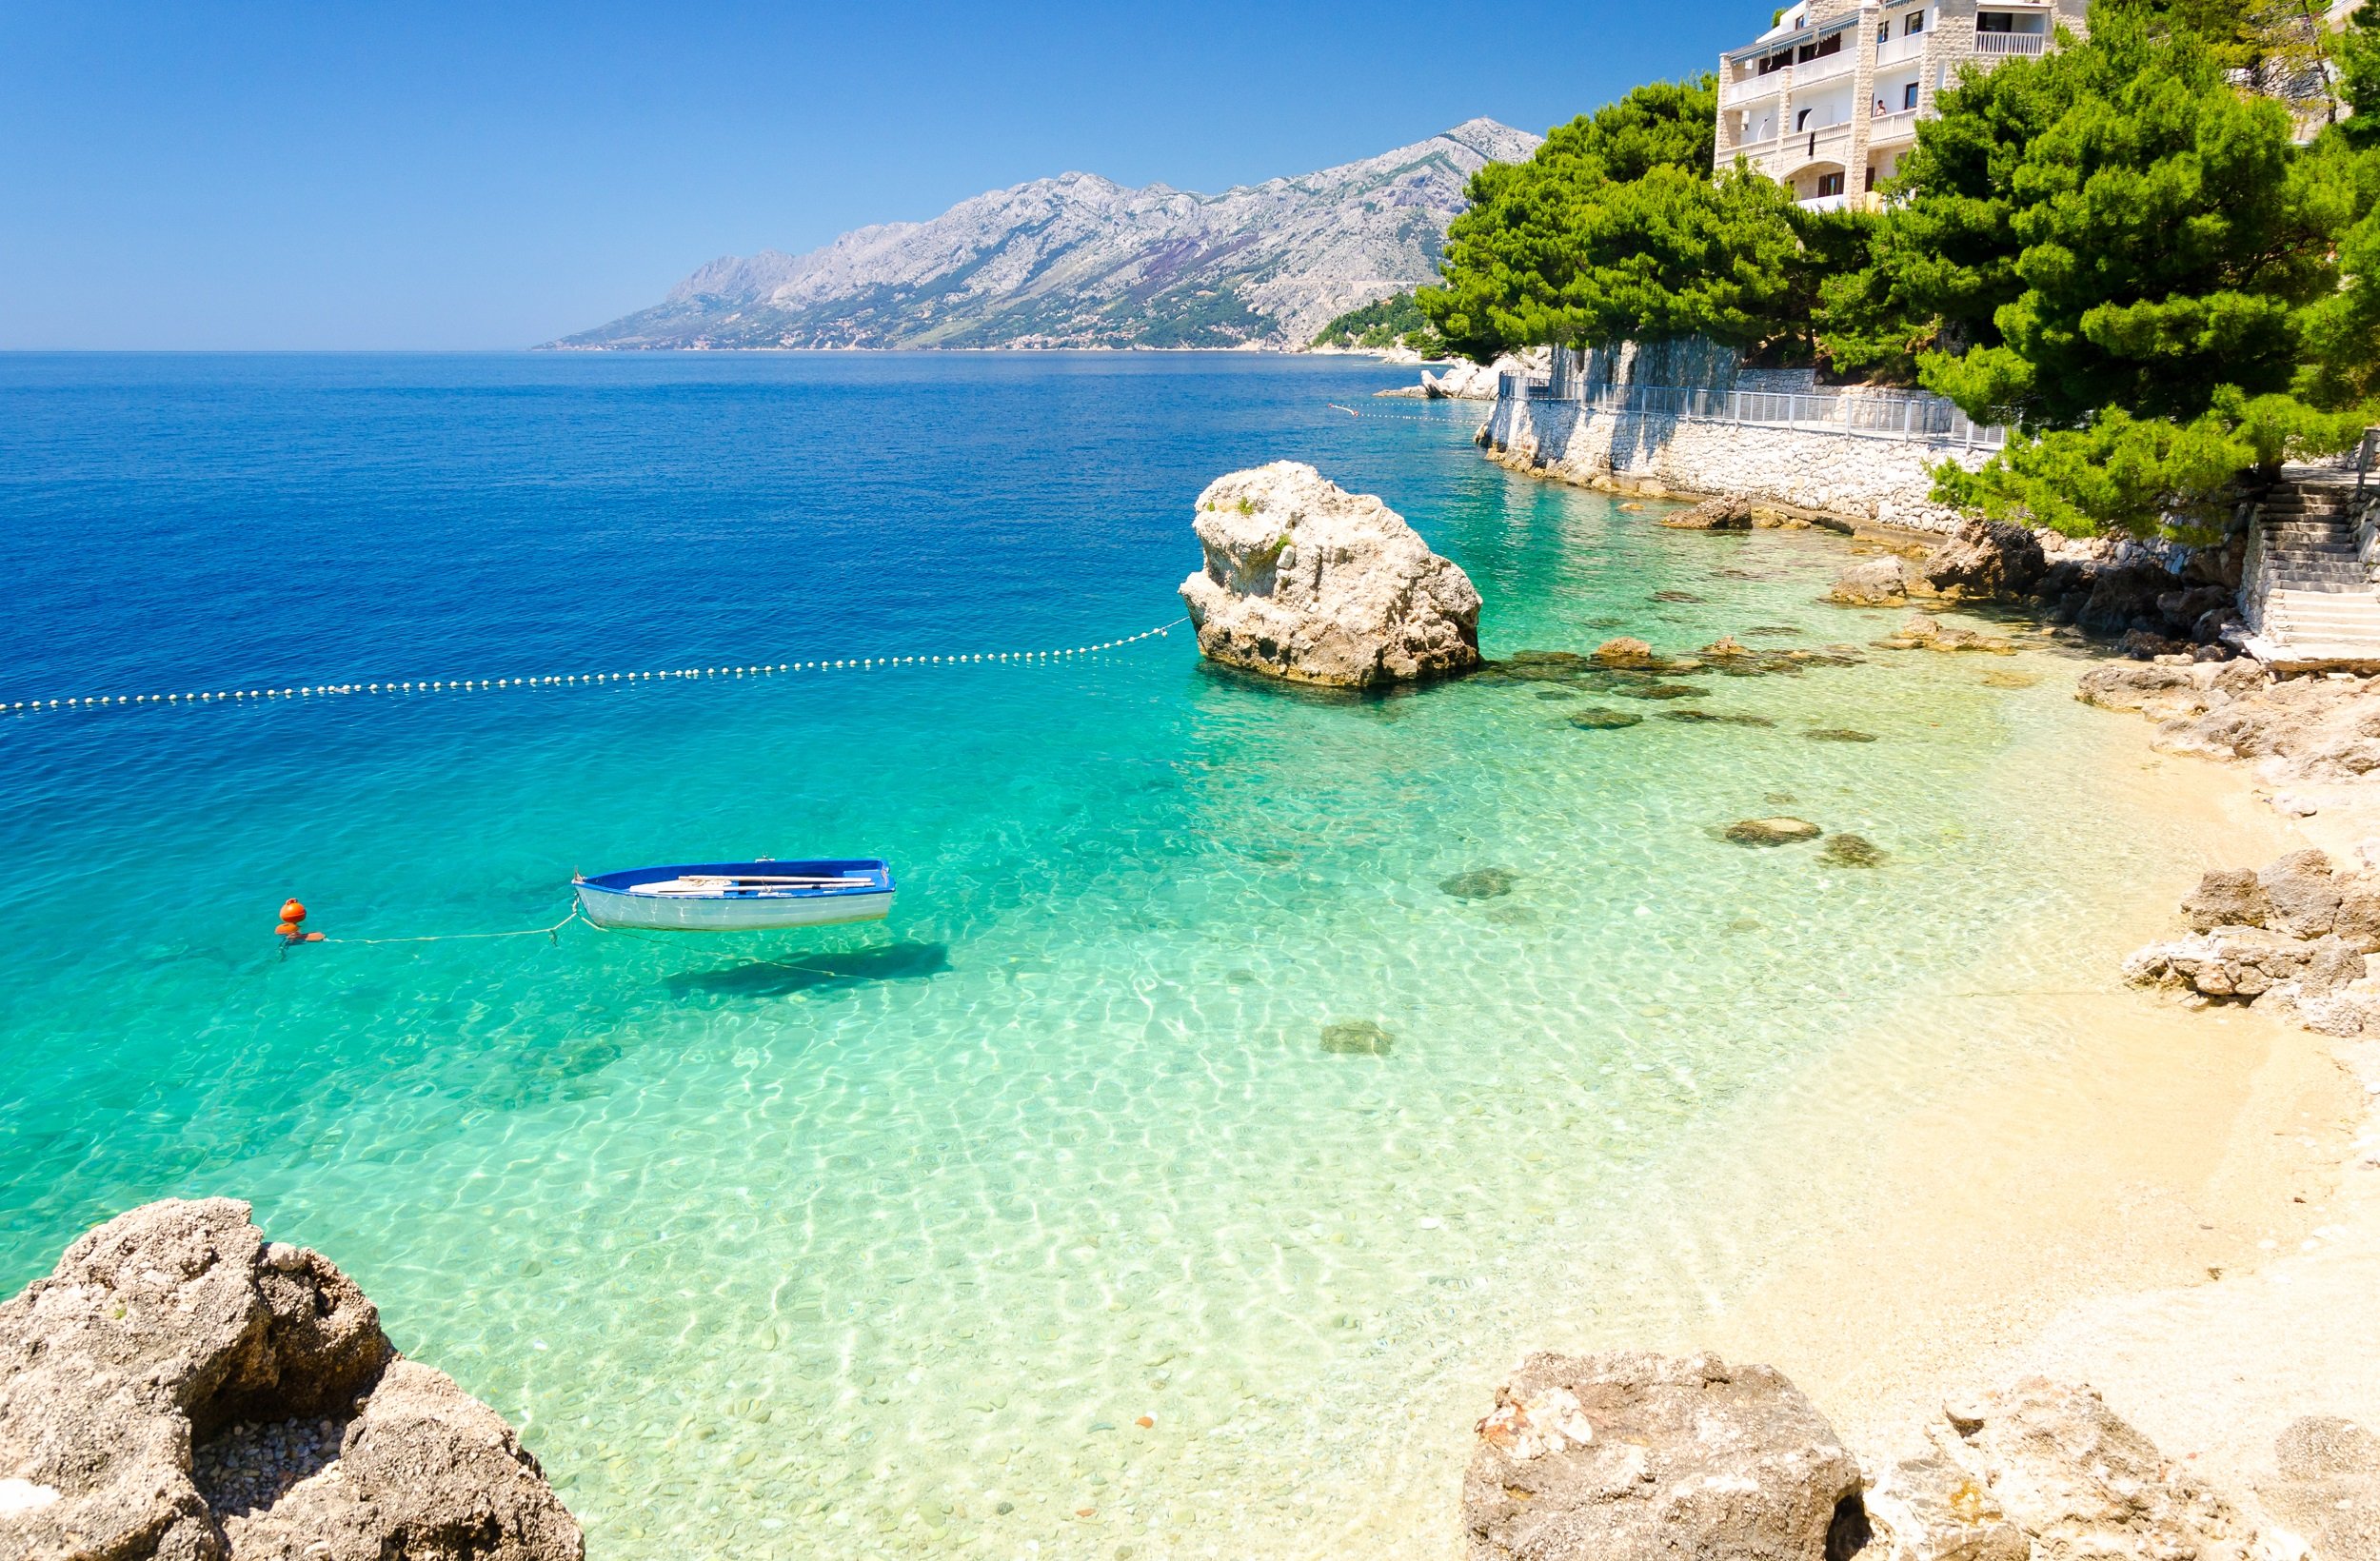 Urlaub in Kroatien: Ferienhäuser für 6 Personen ab 40€